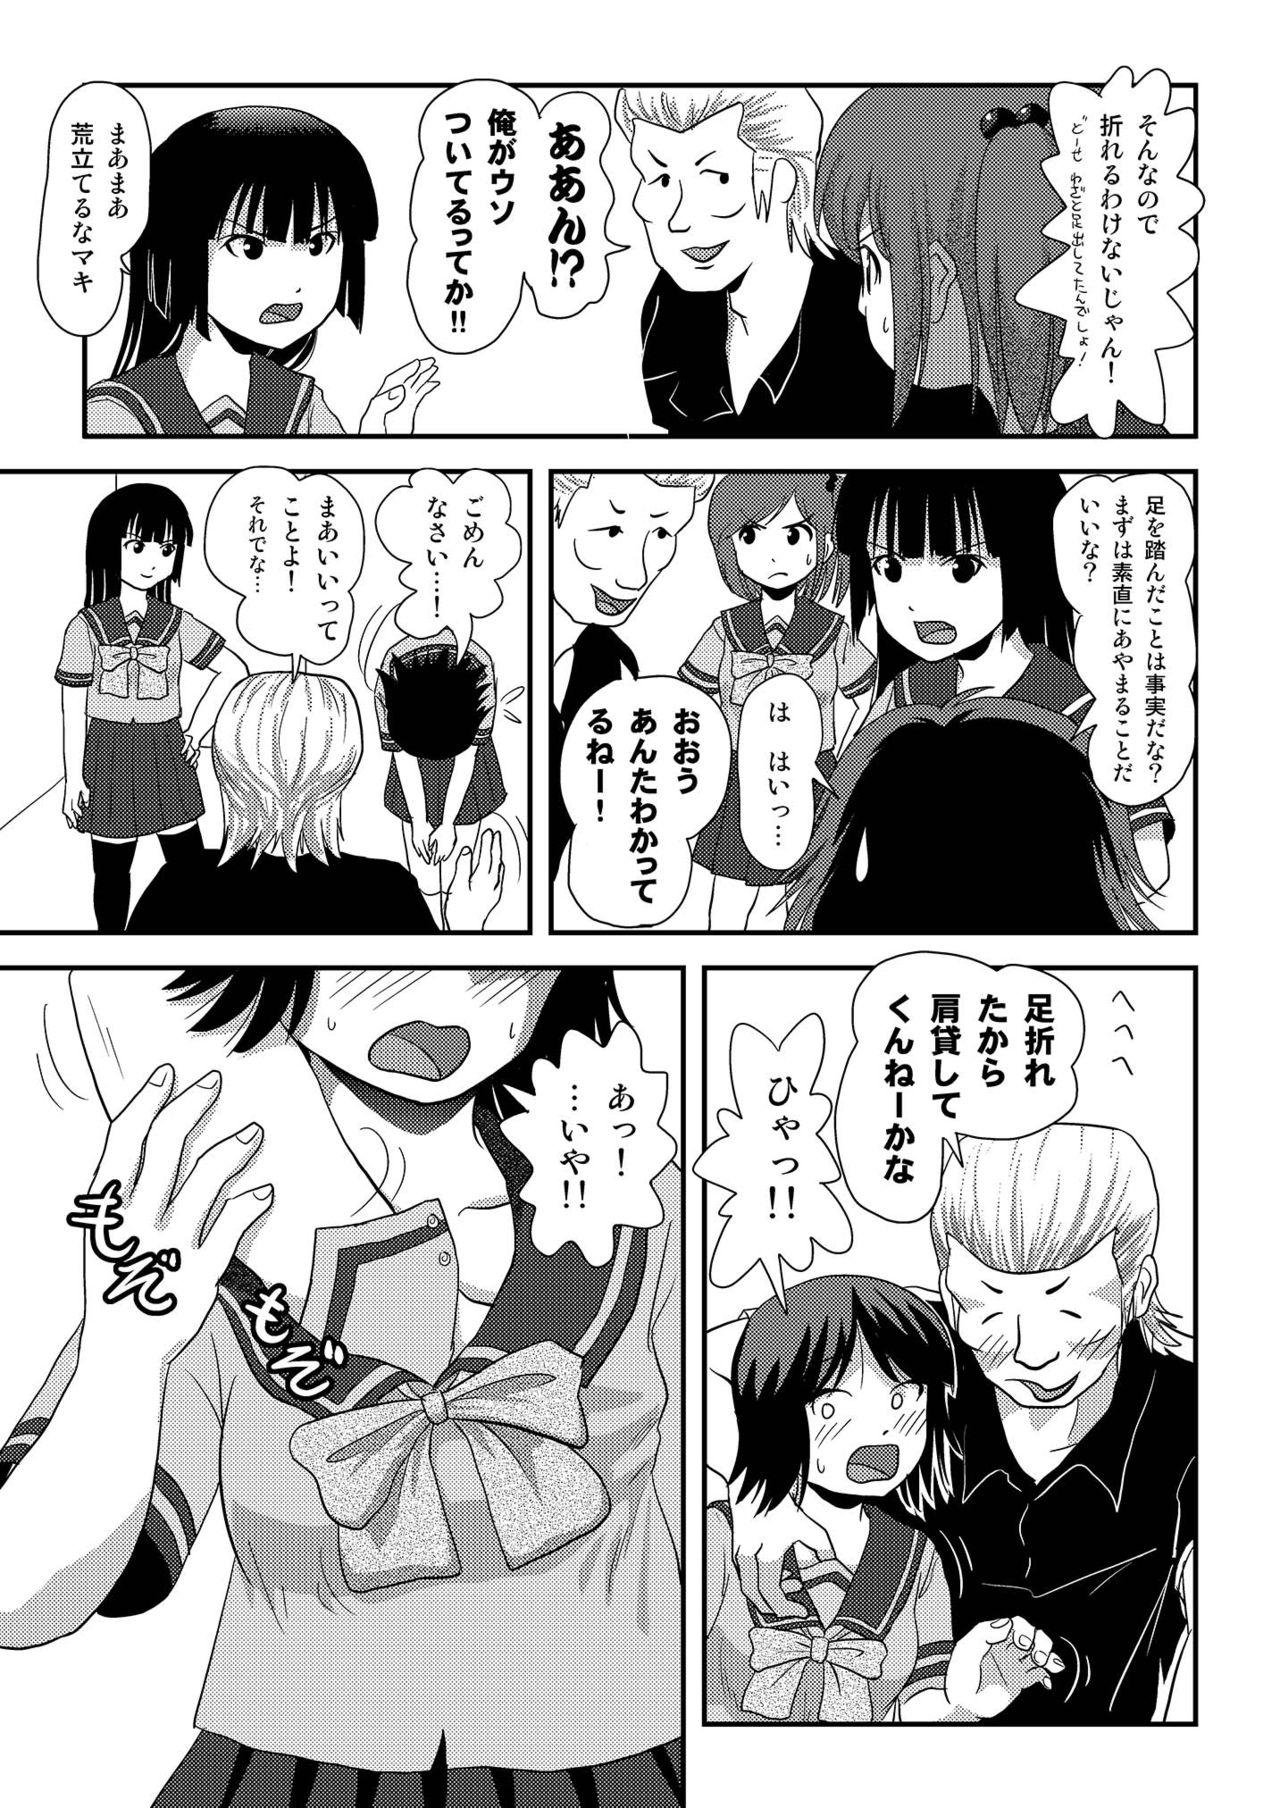 Foreplay Sakura Kotaka no Roshutsubiyori 6 - Original Girl - Page 7